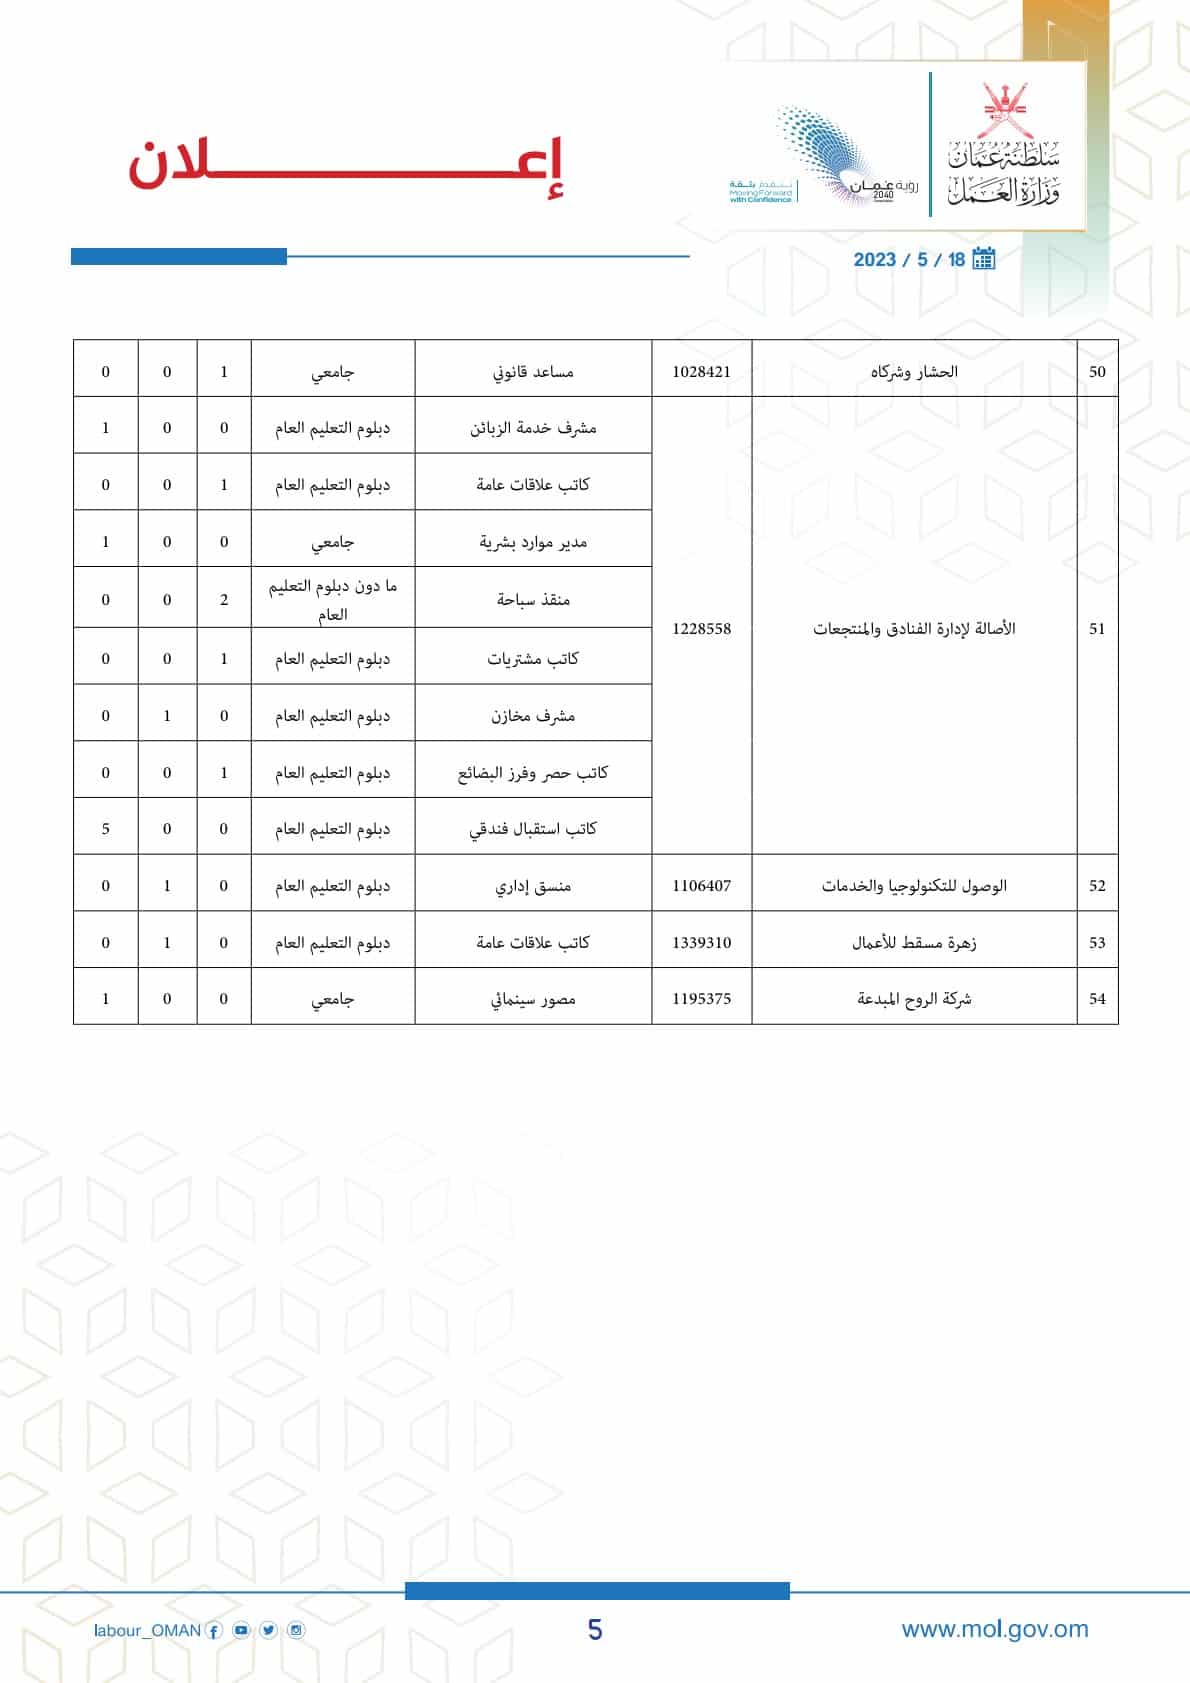 وظائف وزارة العمل سلطنة عمان اليوم 2023 لمختلف التخصصات والمؤهلات ''jobs in OmaN''